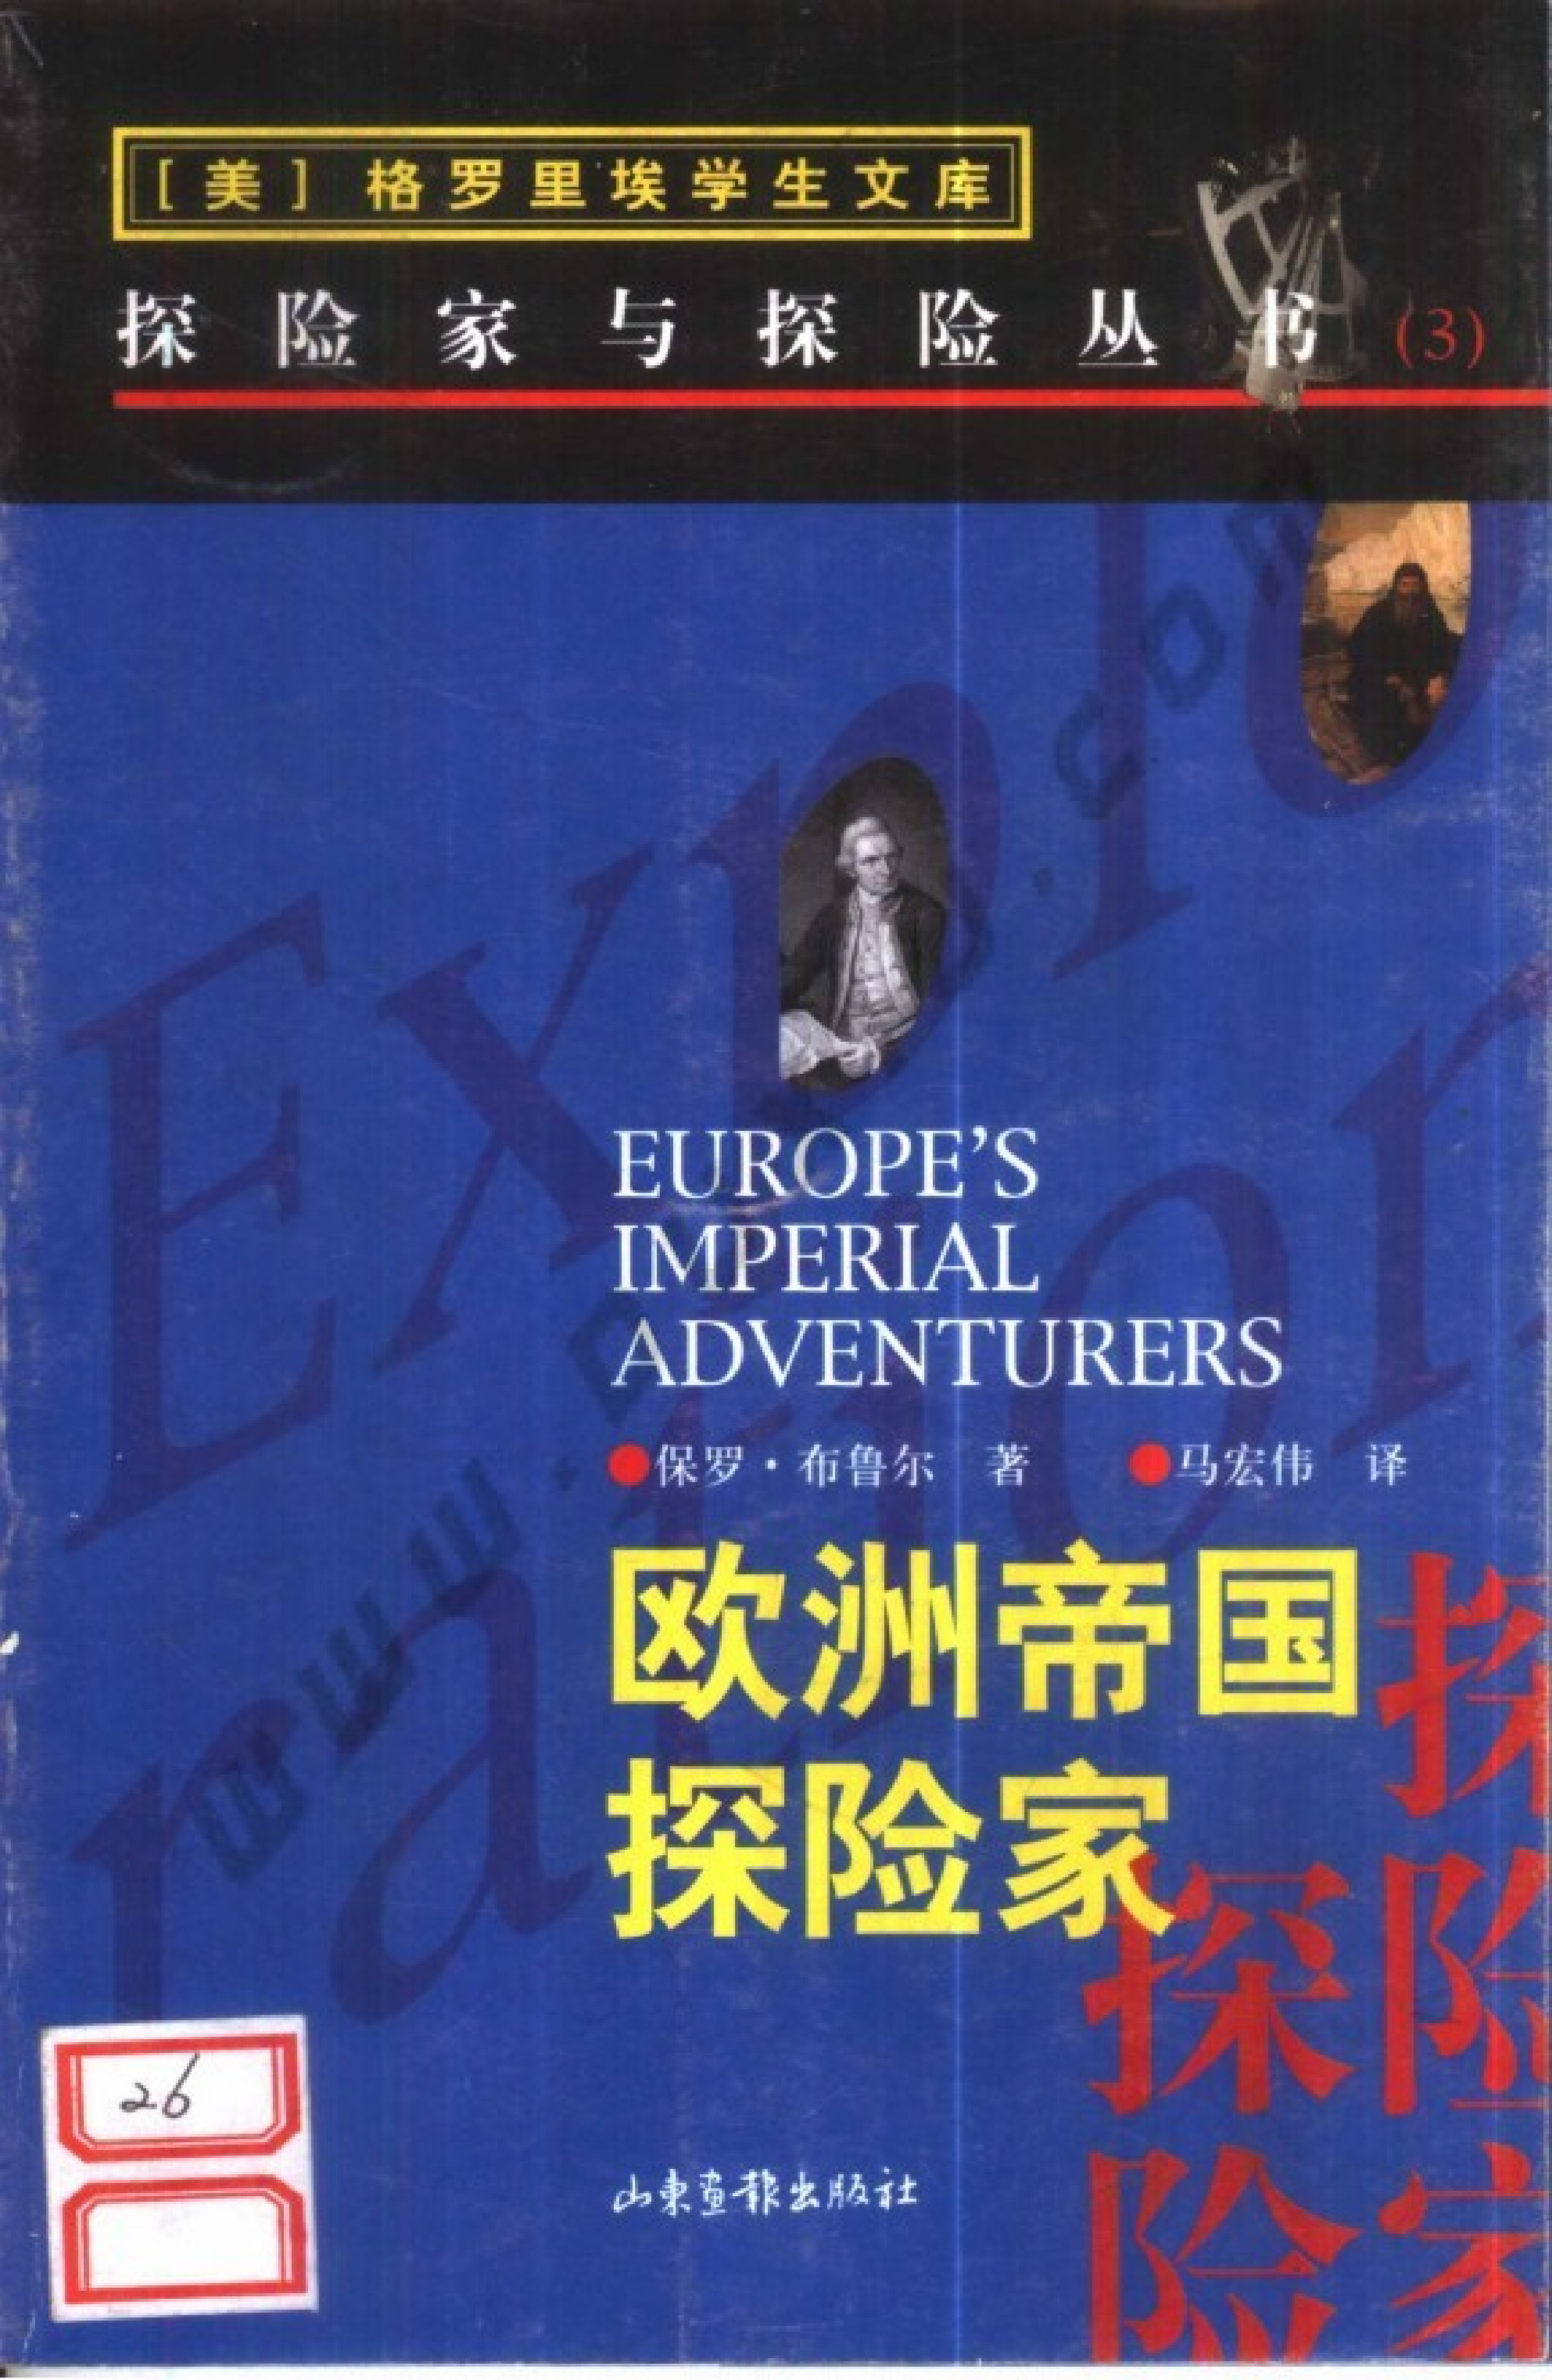 03 欧洲帝国探险家